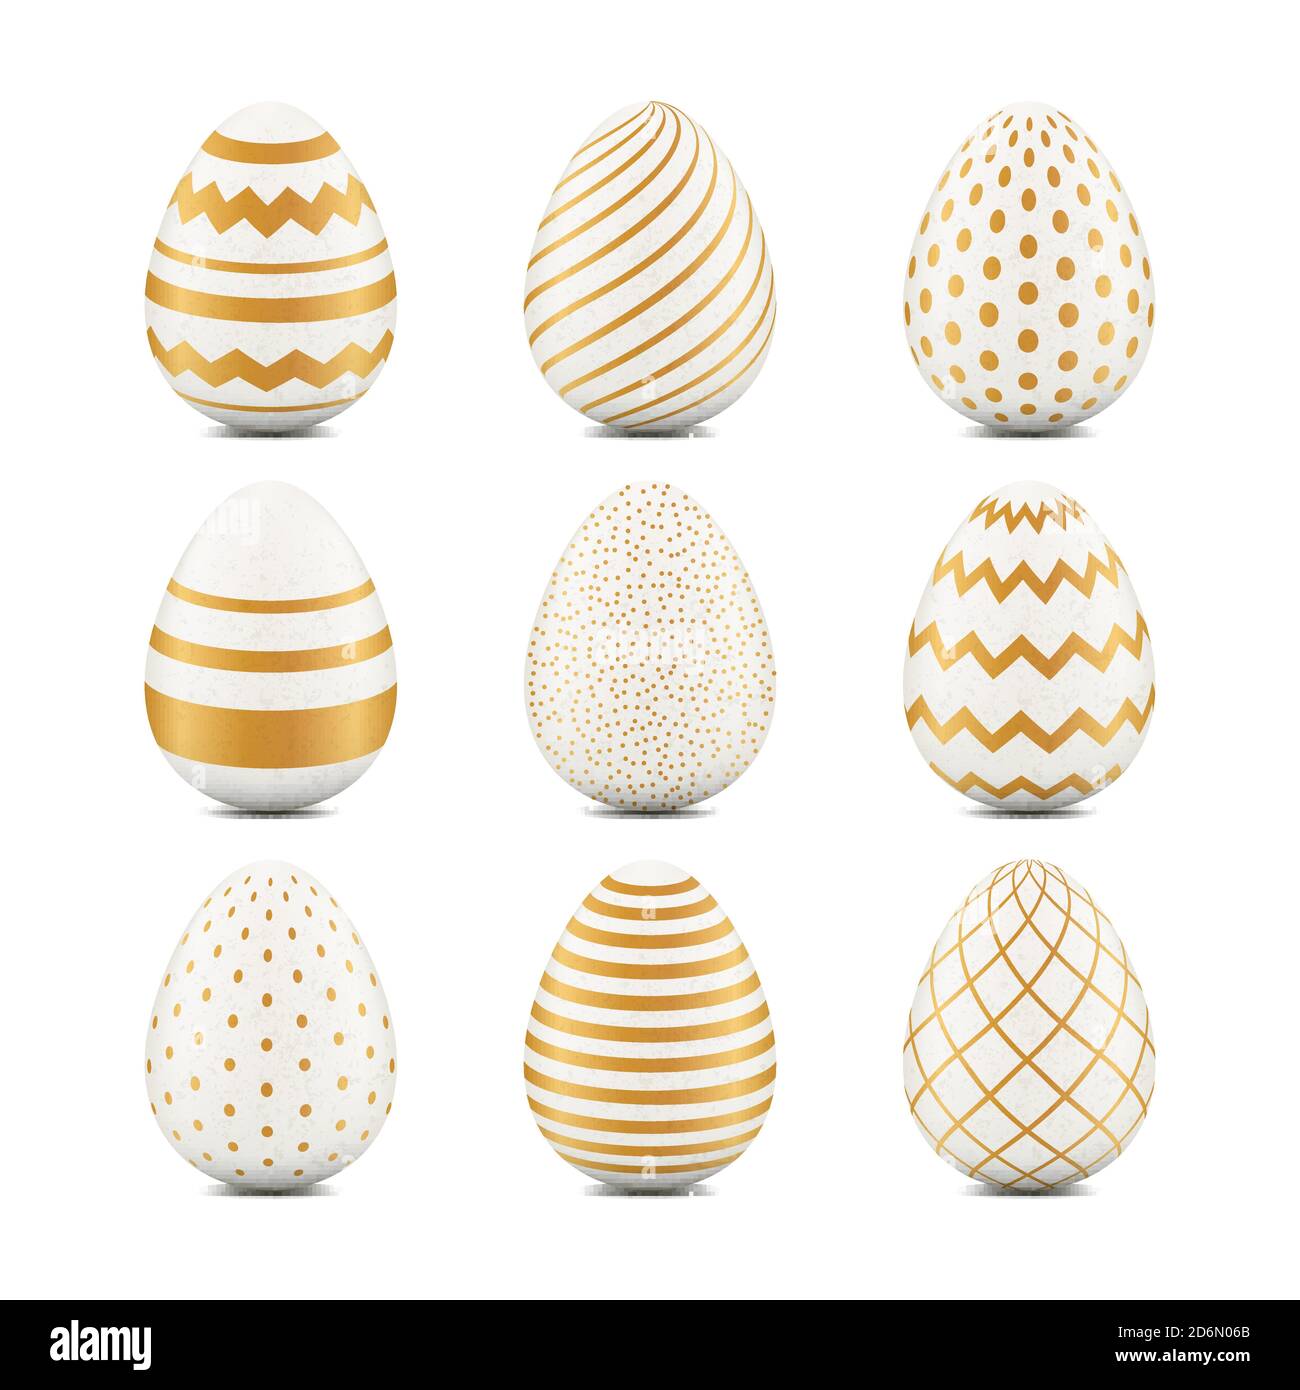 Pasqua 3d uova realistiche con texture geometriche. Elementi vettoriali per il design delle vacanze. Motivo bianco dorato. Illustrazione Vettoriale